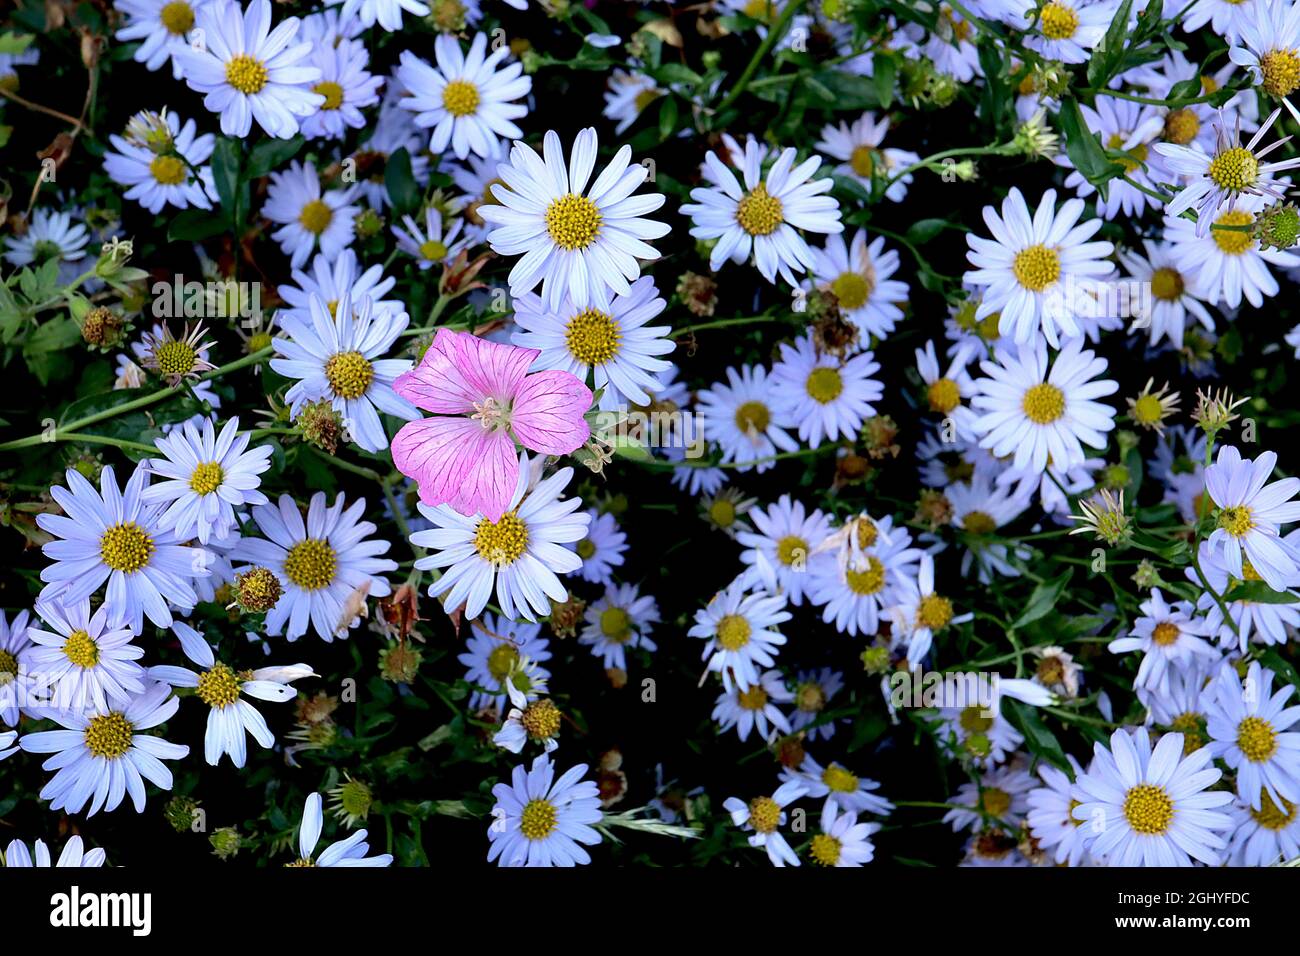 Symphotrichum ‘Little Carlow’ Aster Little Carlow – Masse von blass violett blauen Gänseblümchen-ähnlichen Blüten, Geranium x oxonianum ‘Wargrave Pink’ Cranesbill Stockfoto